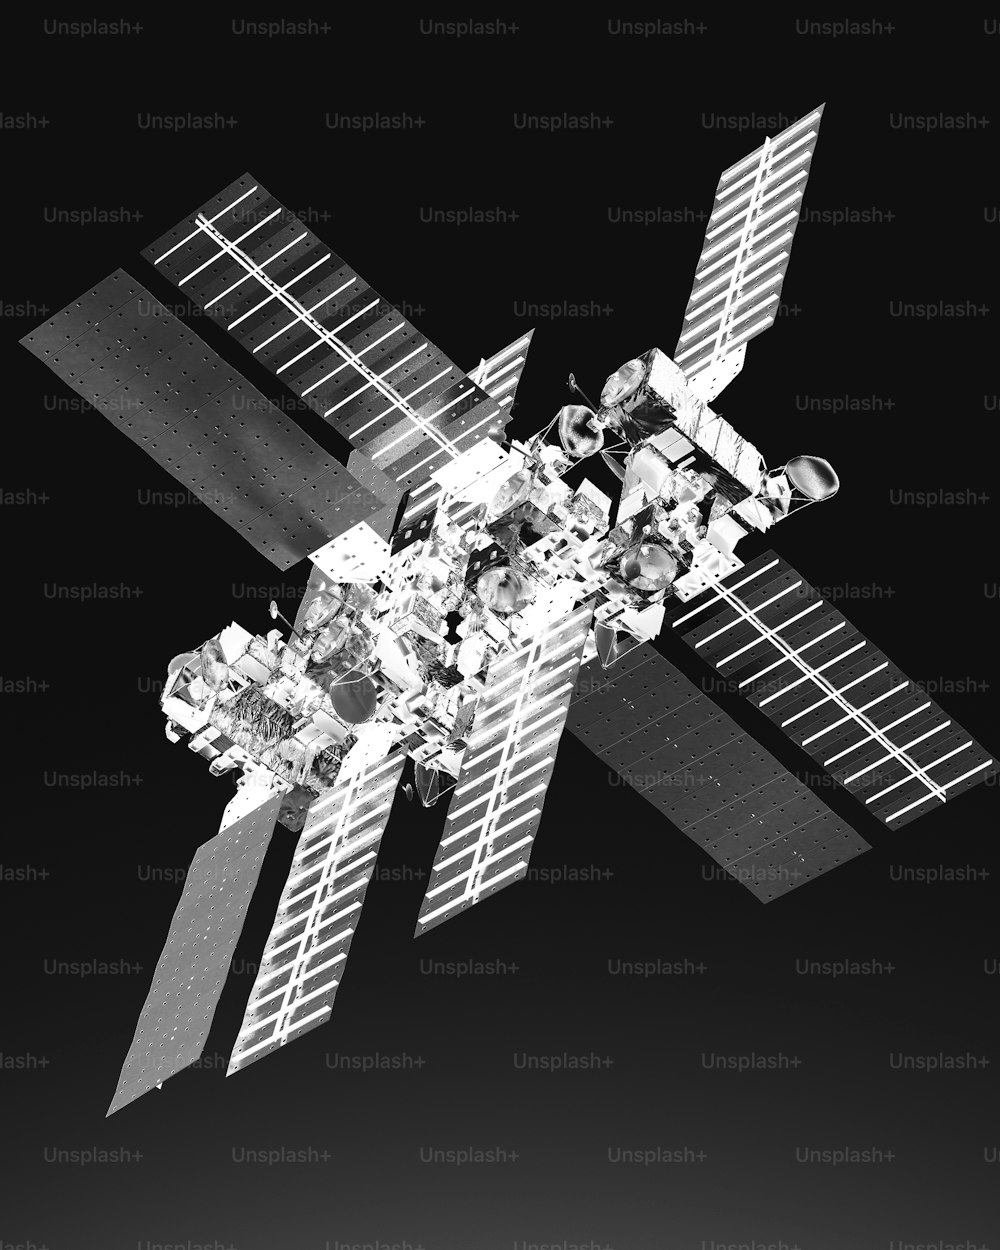 Une photo en noir et blanc d’un satellite